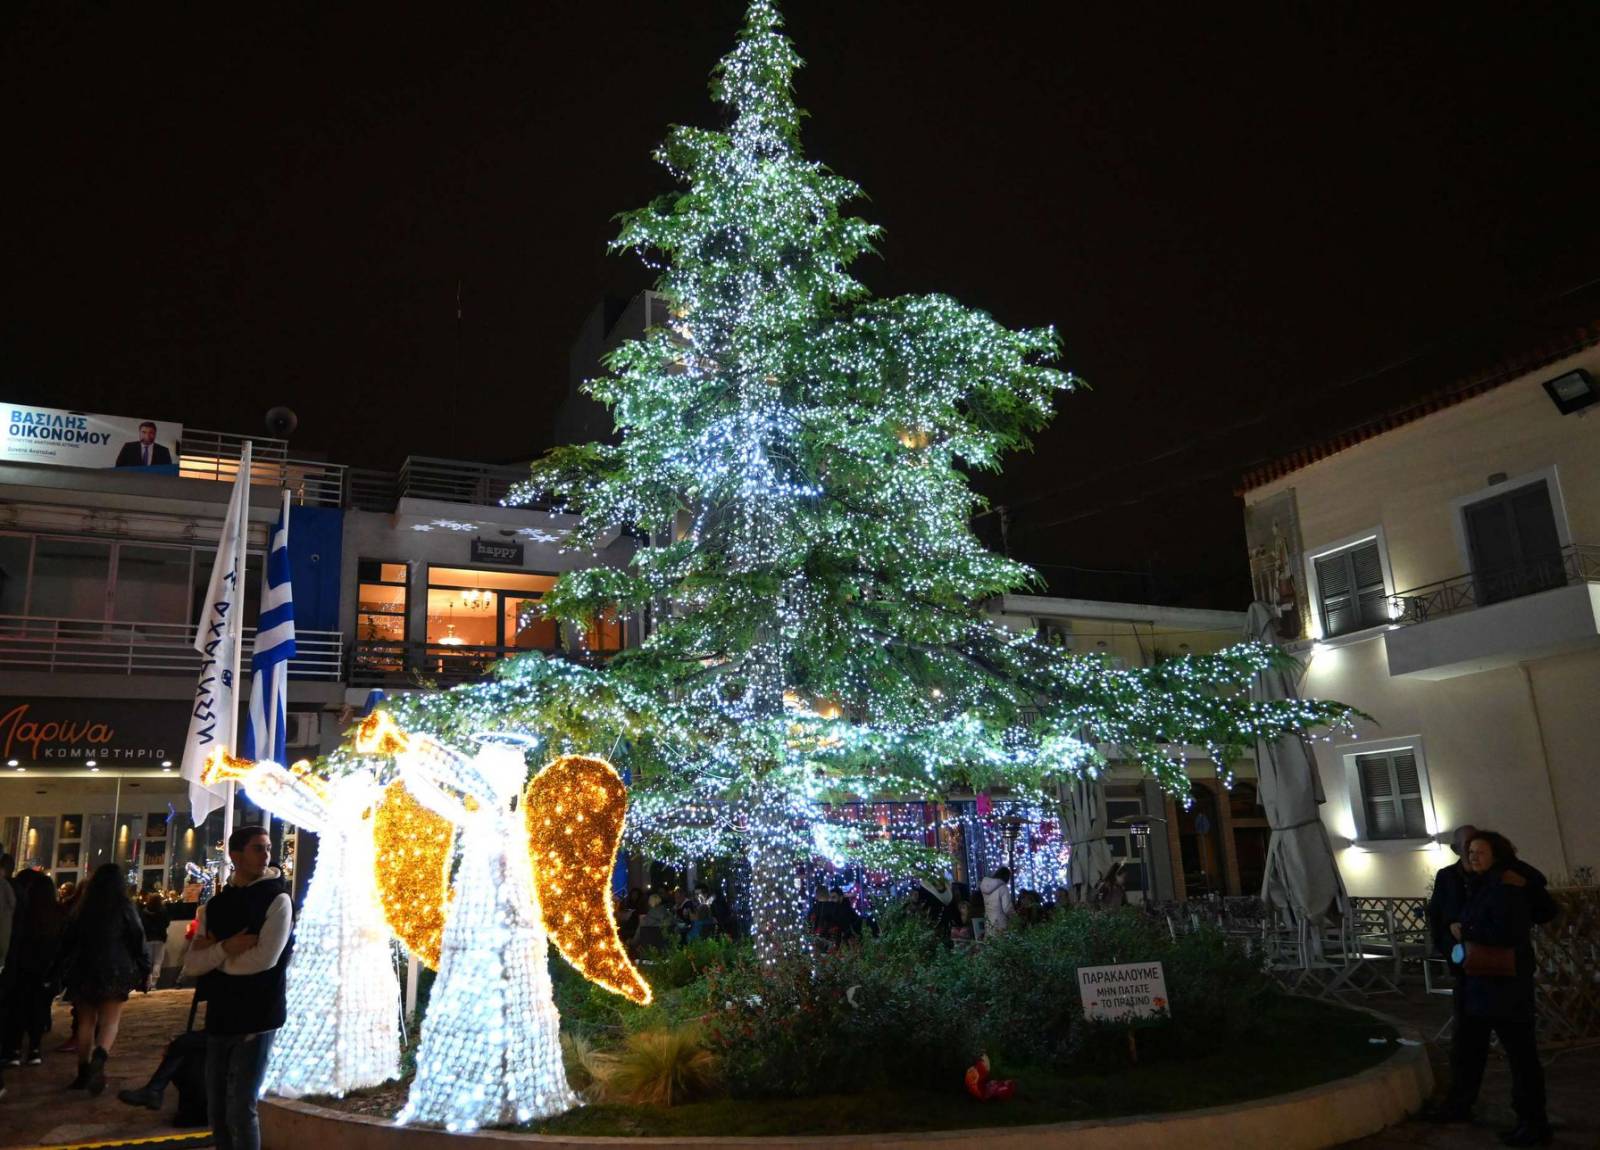 Με μεγάλη επιτυχία, τους ONIRAMA και αθρόα προσέλευση κόσμου πραγματοποιήθηκε το άναμμα του χριστουγεννιάτικου δέντρου στην κεντρική πλατεία των Αχαρνών